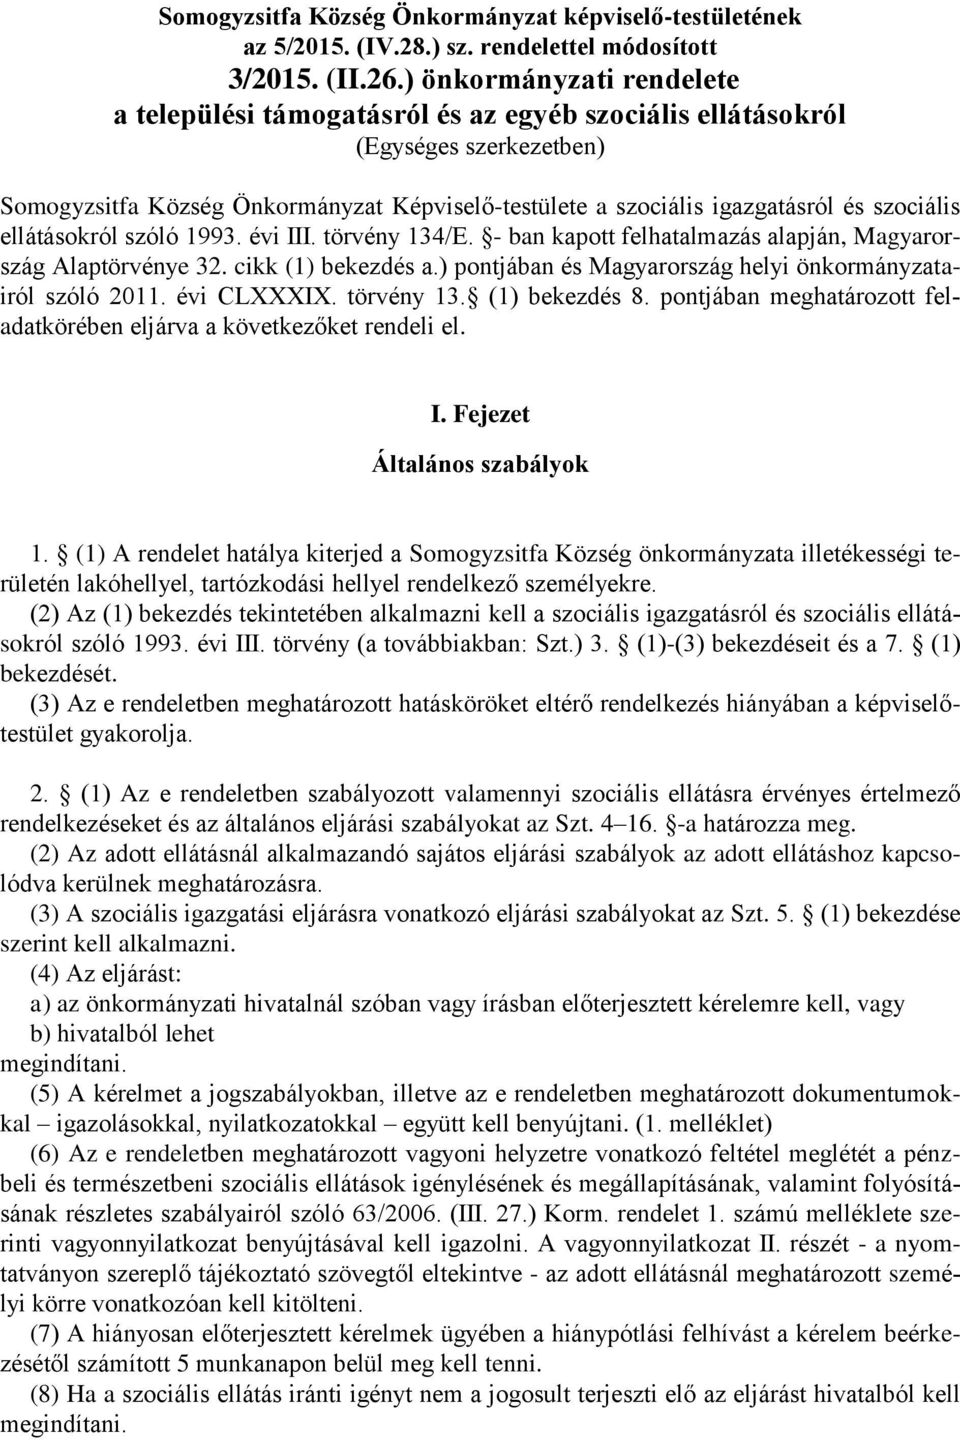 szociális ellátásokról szóló 1993. évi III. törvény 134/E. - ban kapott felhatalmazás alapján, Magyarország Alaptörvénye 32. cikk (1) bekezdés a.